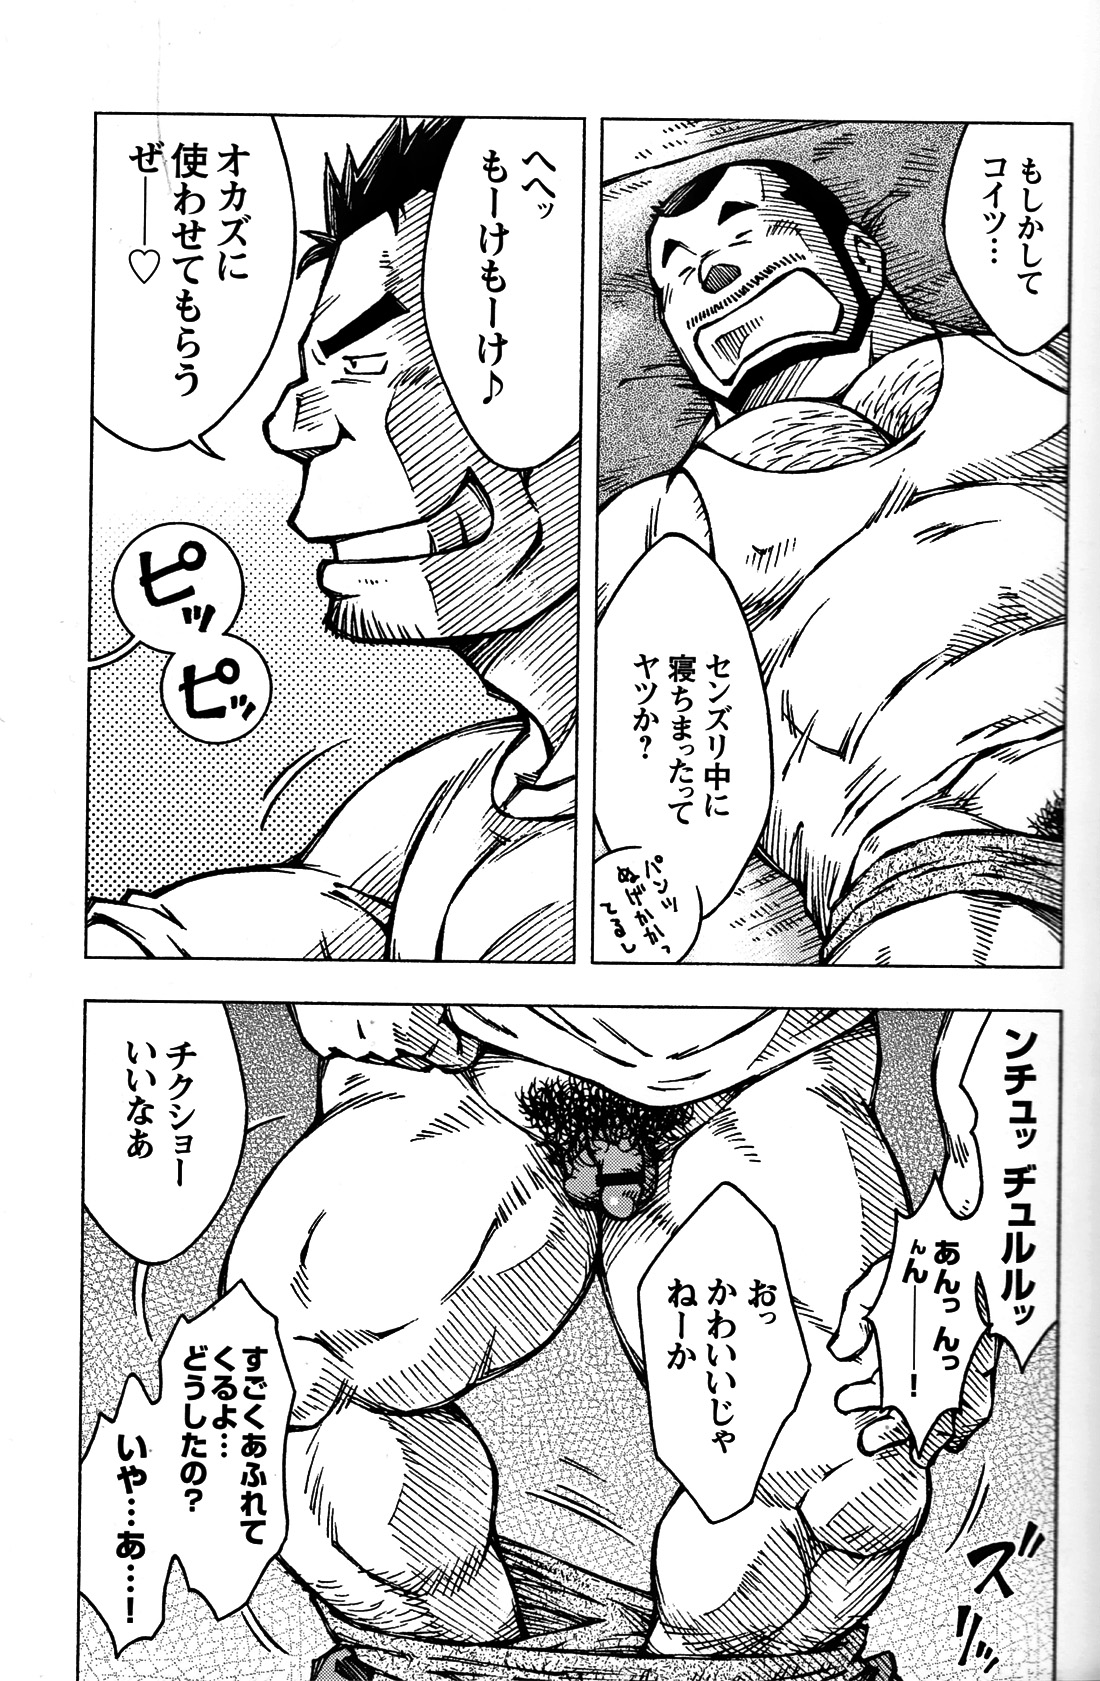 Comic G-men Gaho No. 06 Nikutai Roudousha page 14 full